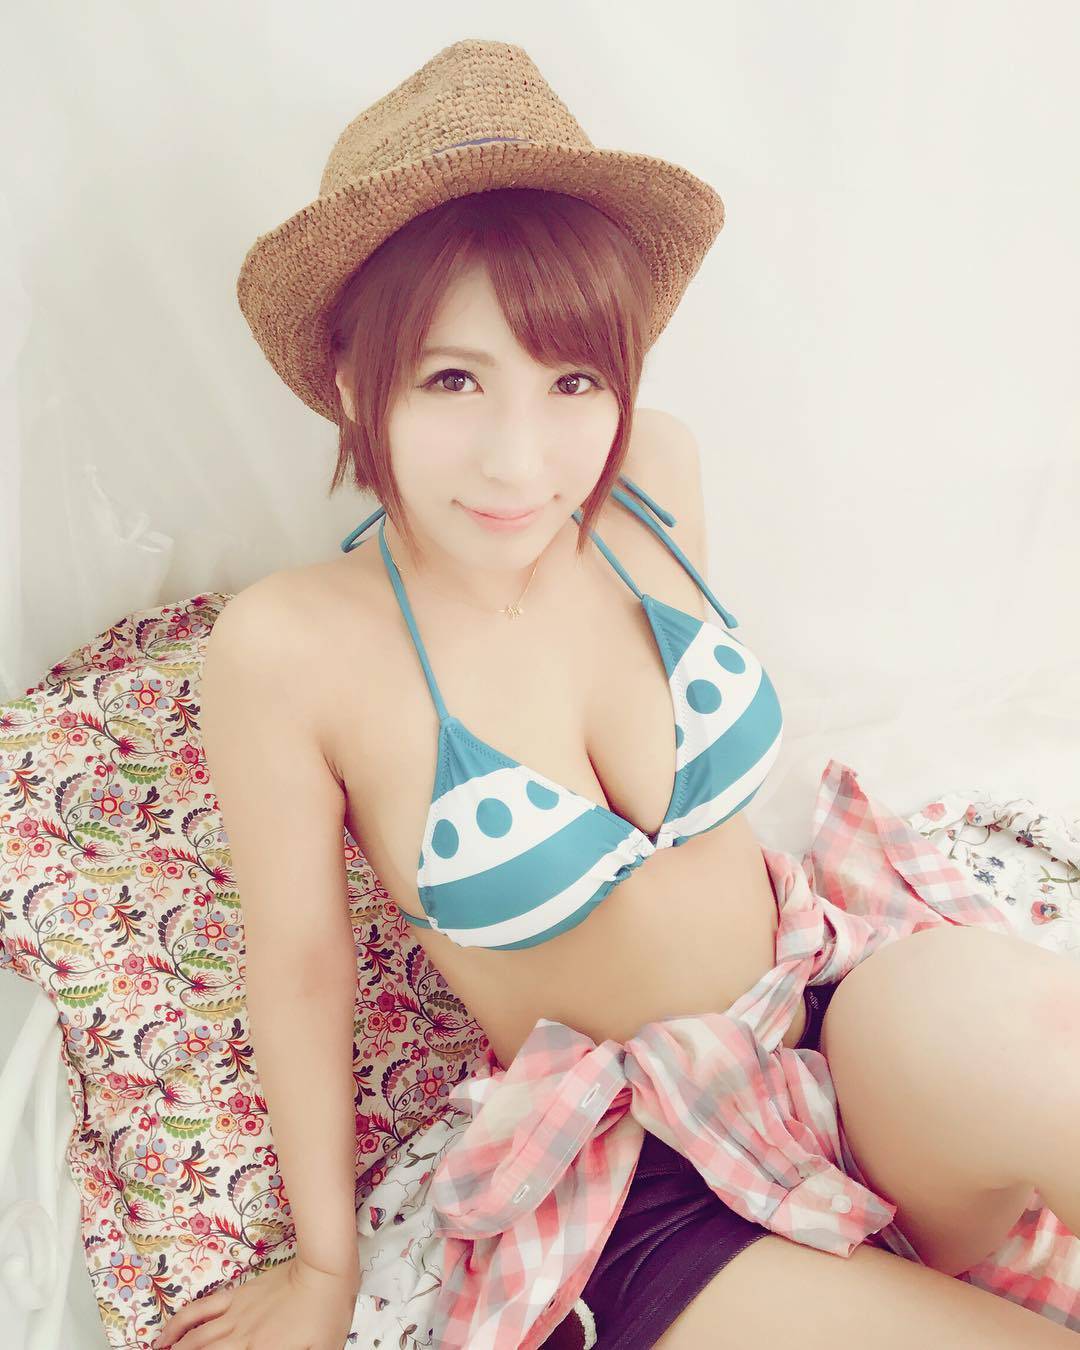 Hoshino Nami in Bikini, cool